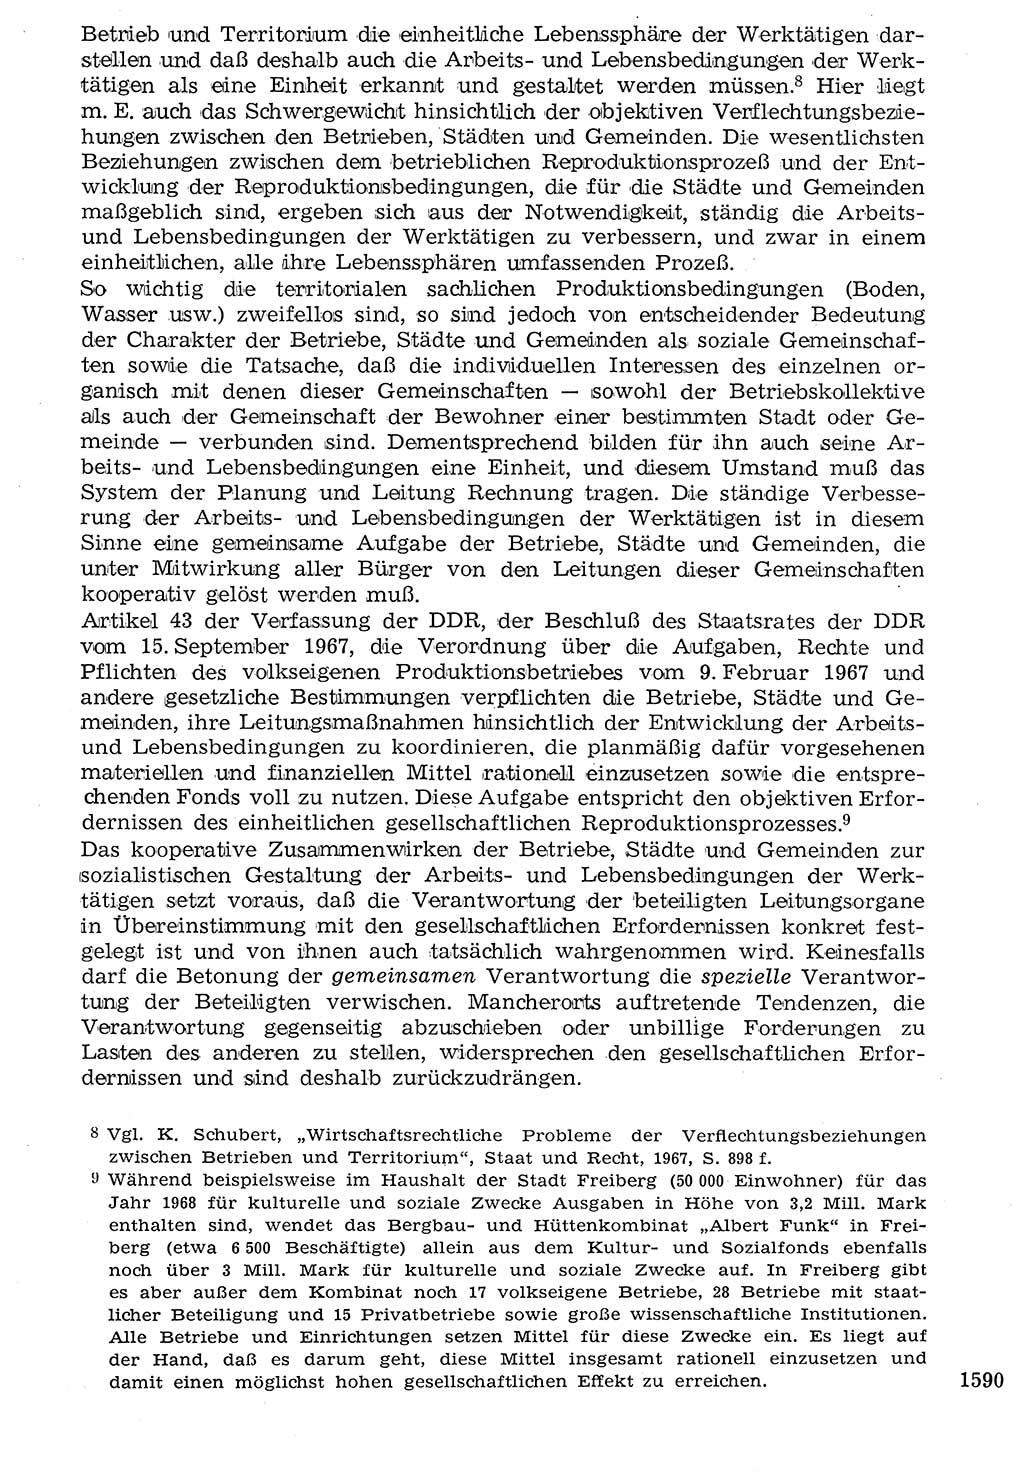 Staat und Recht (StuR), 17. Jahrgang [Deutsche Demokratische Republik (DDR)] 1968, Seite 1590 (StuR DDR 1968, S. 1590)